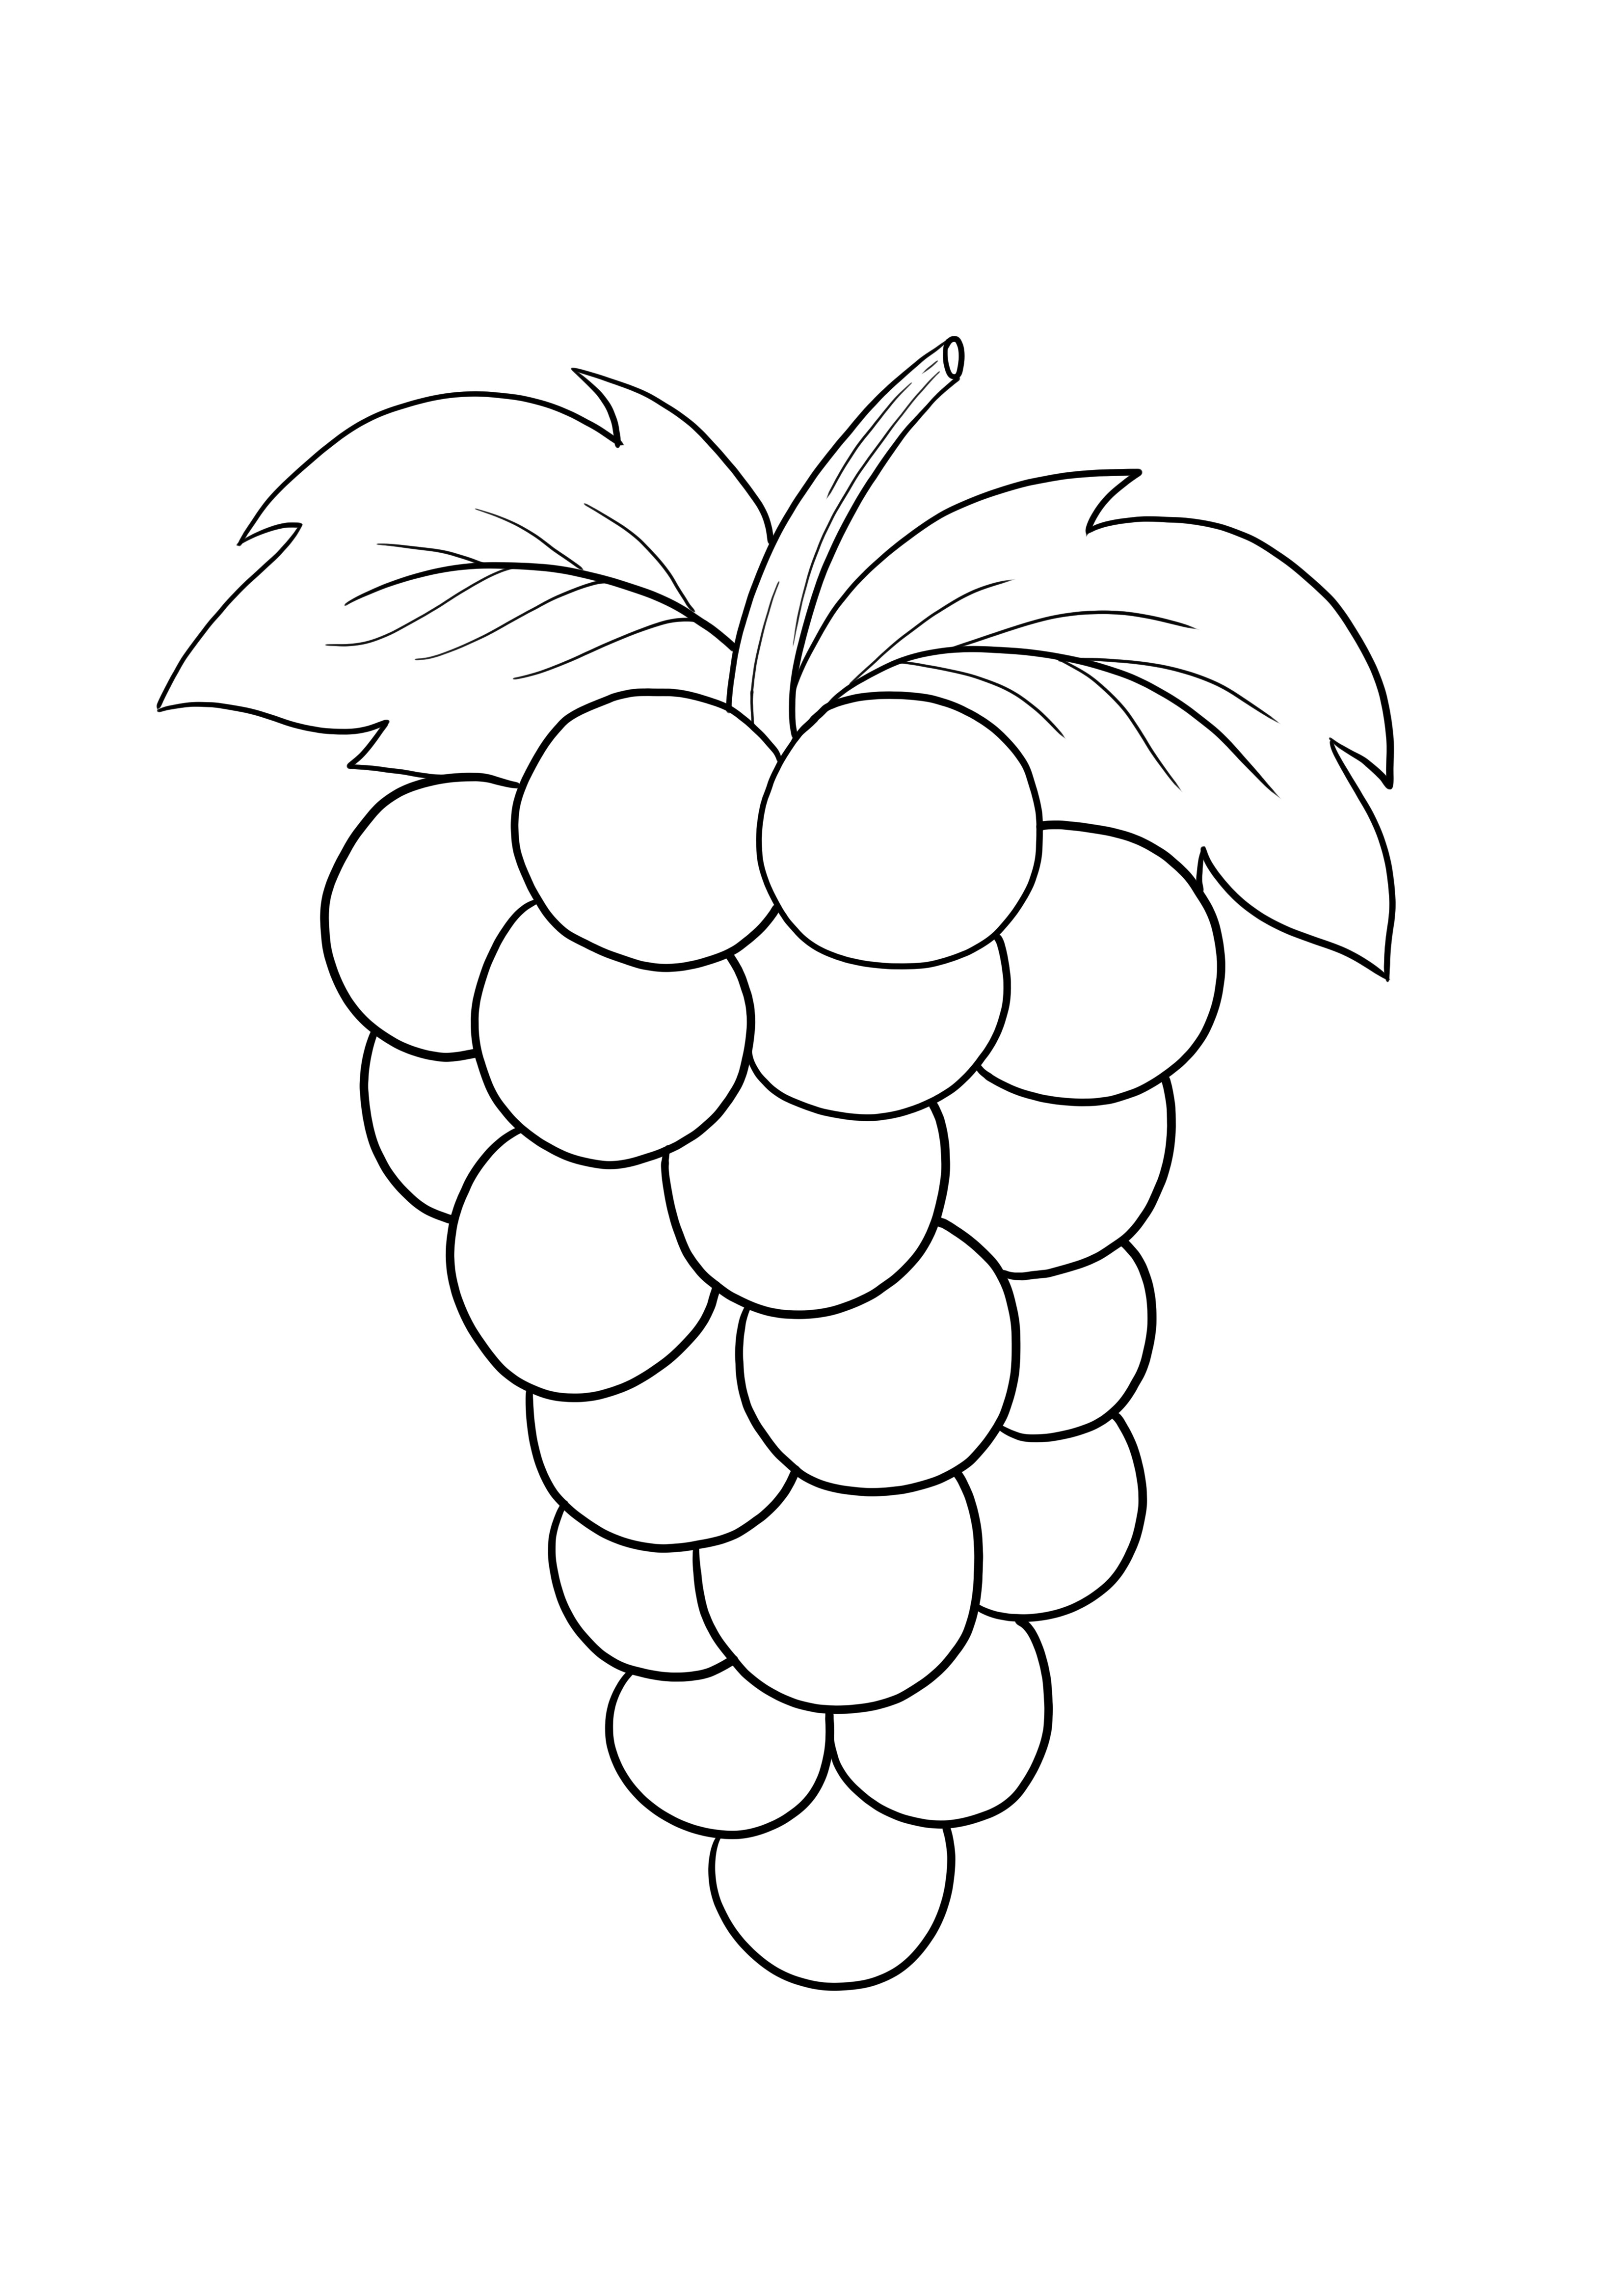 Coloração simples de frutas de uvas grátis para imprimir folha